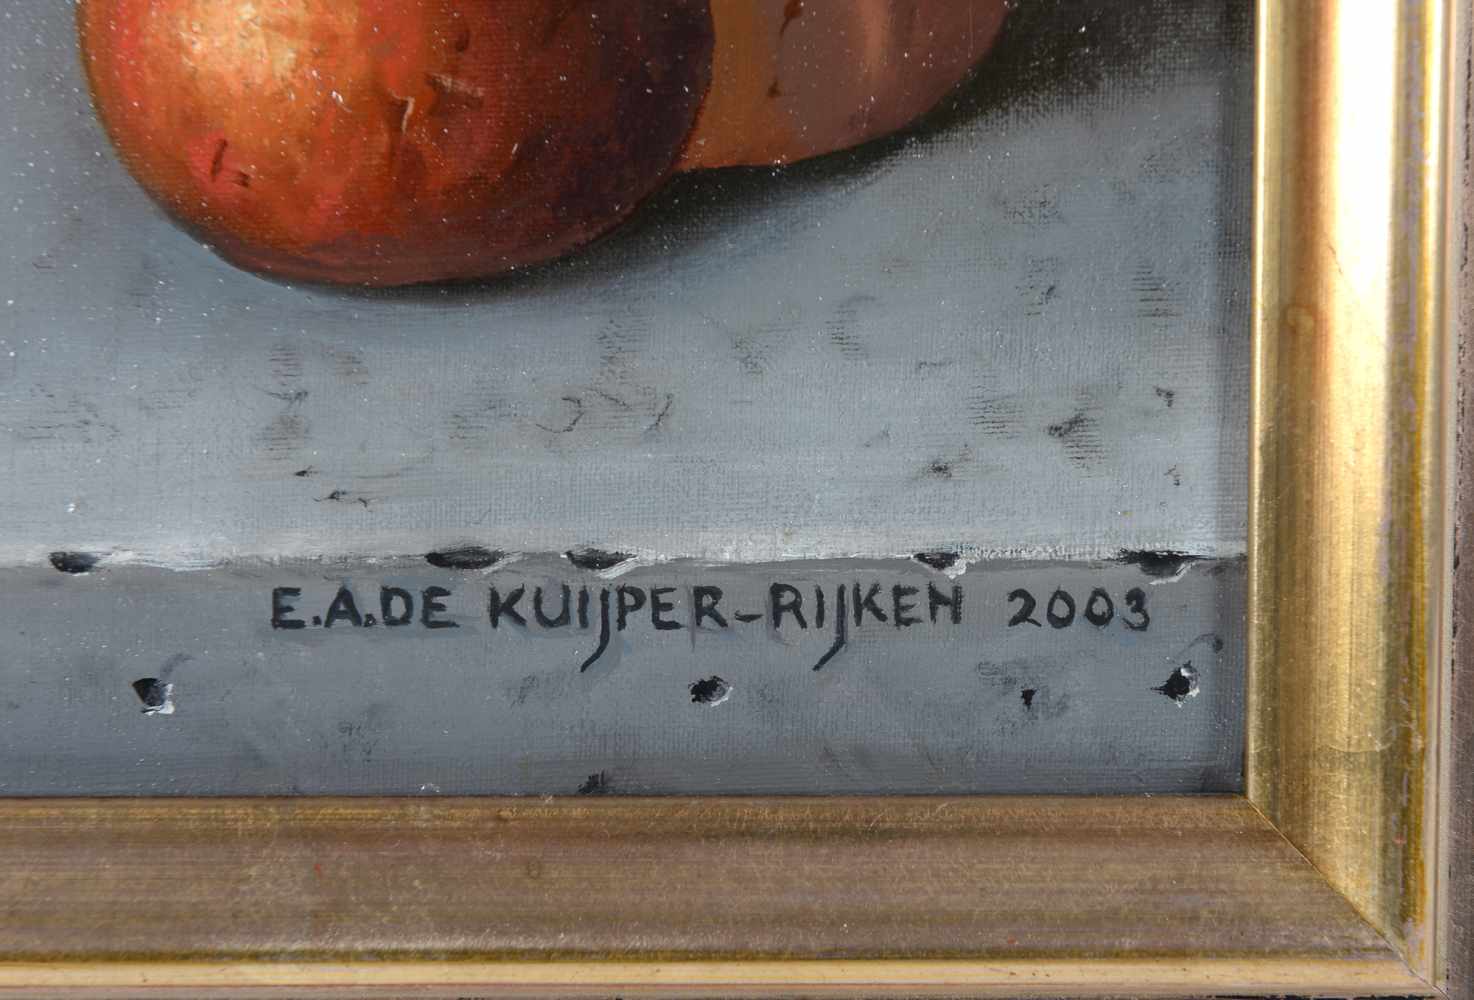 Elsbeth de Kuyper - Rijken (1954-) 'Stilleven met comfoor en een kan', gesigneerd en gedateerd - Image 3 of 4